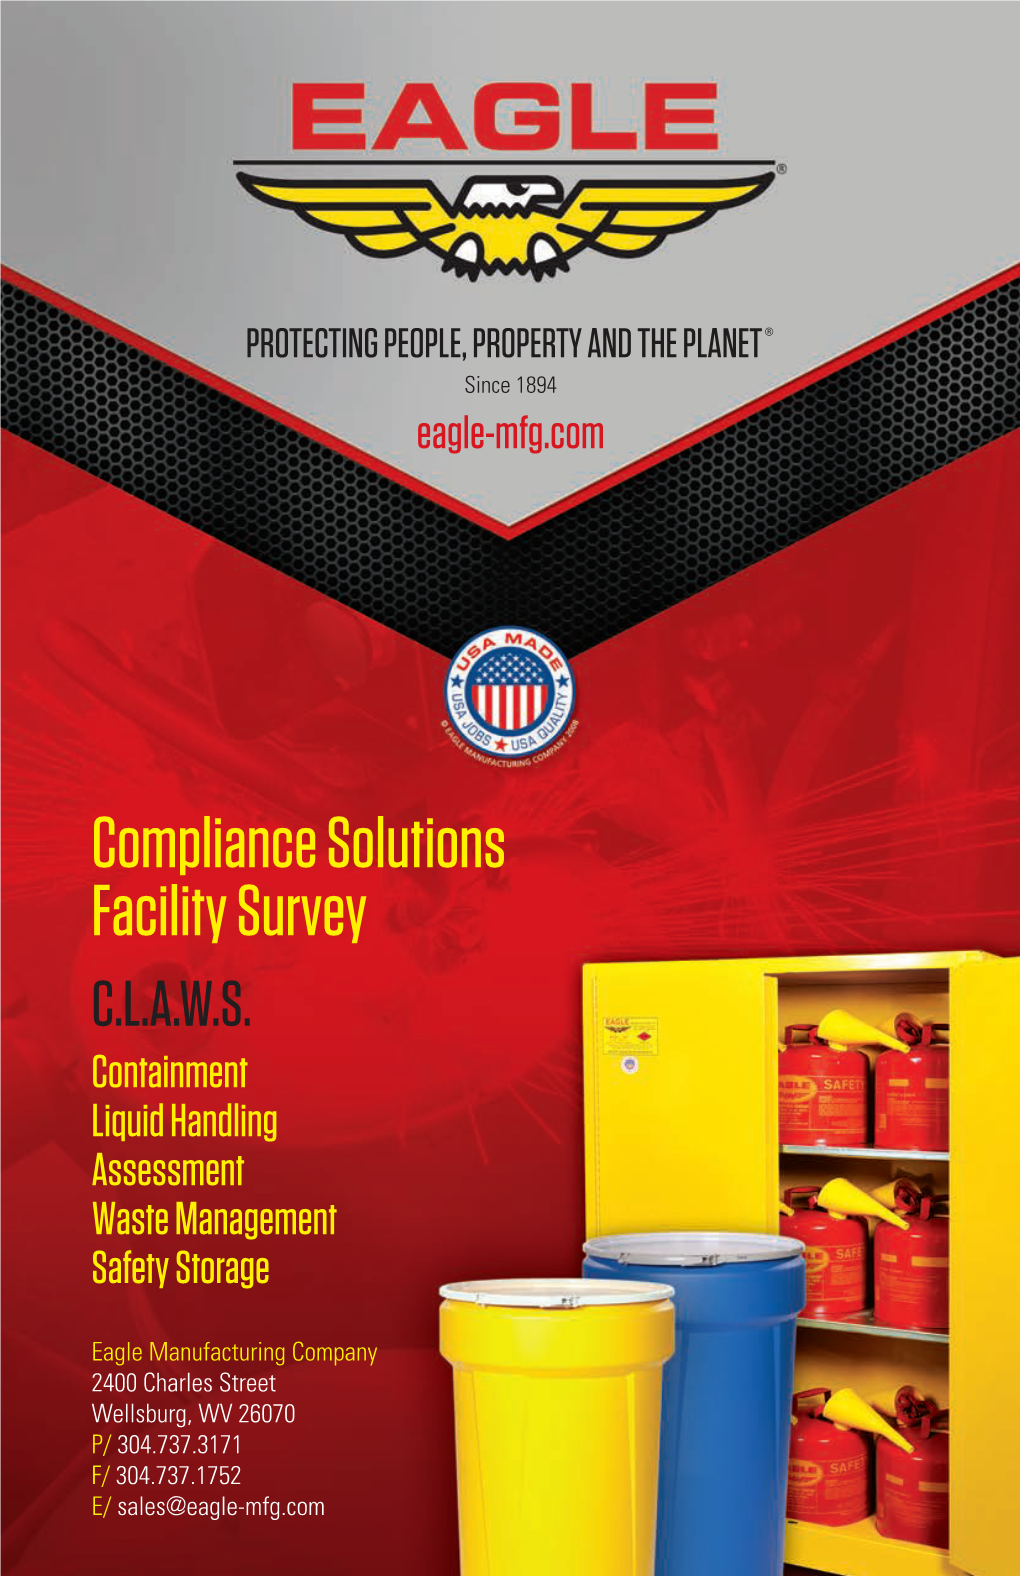 Compliance Solutions Facility Survey C.L.A.W.S